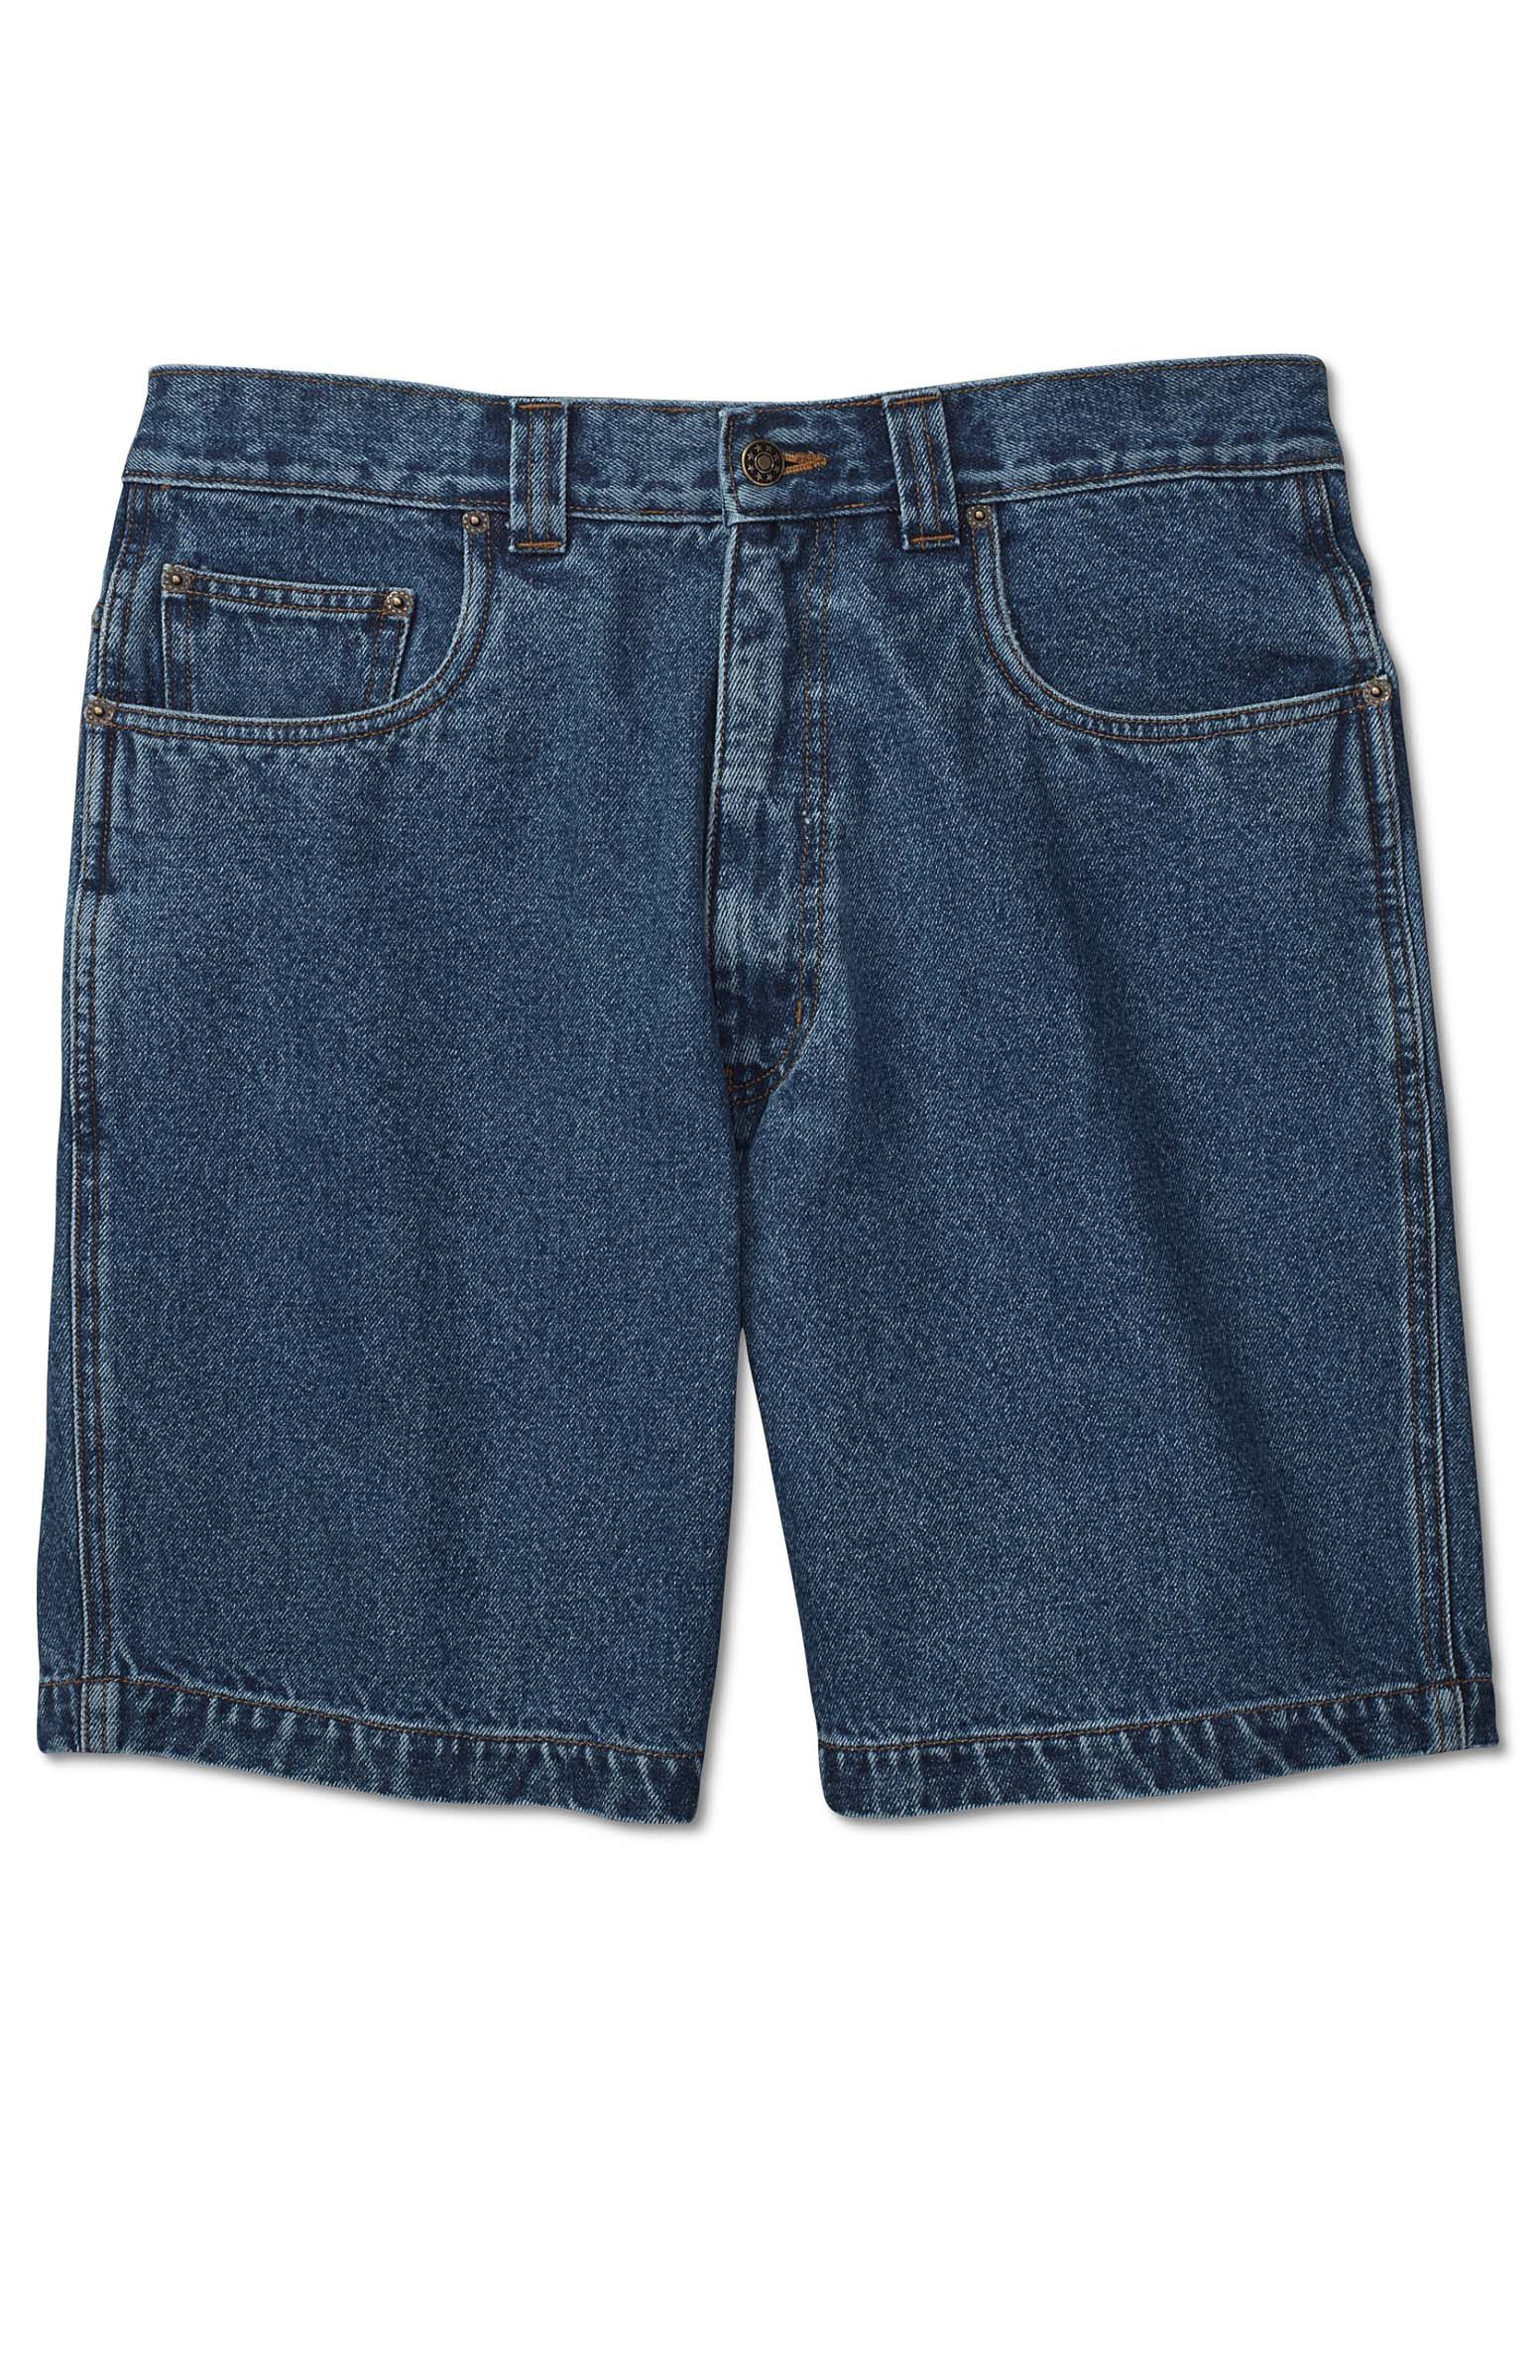 Harbor Bay Loose-Fit Shorts